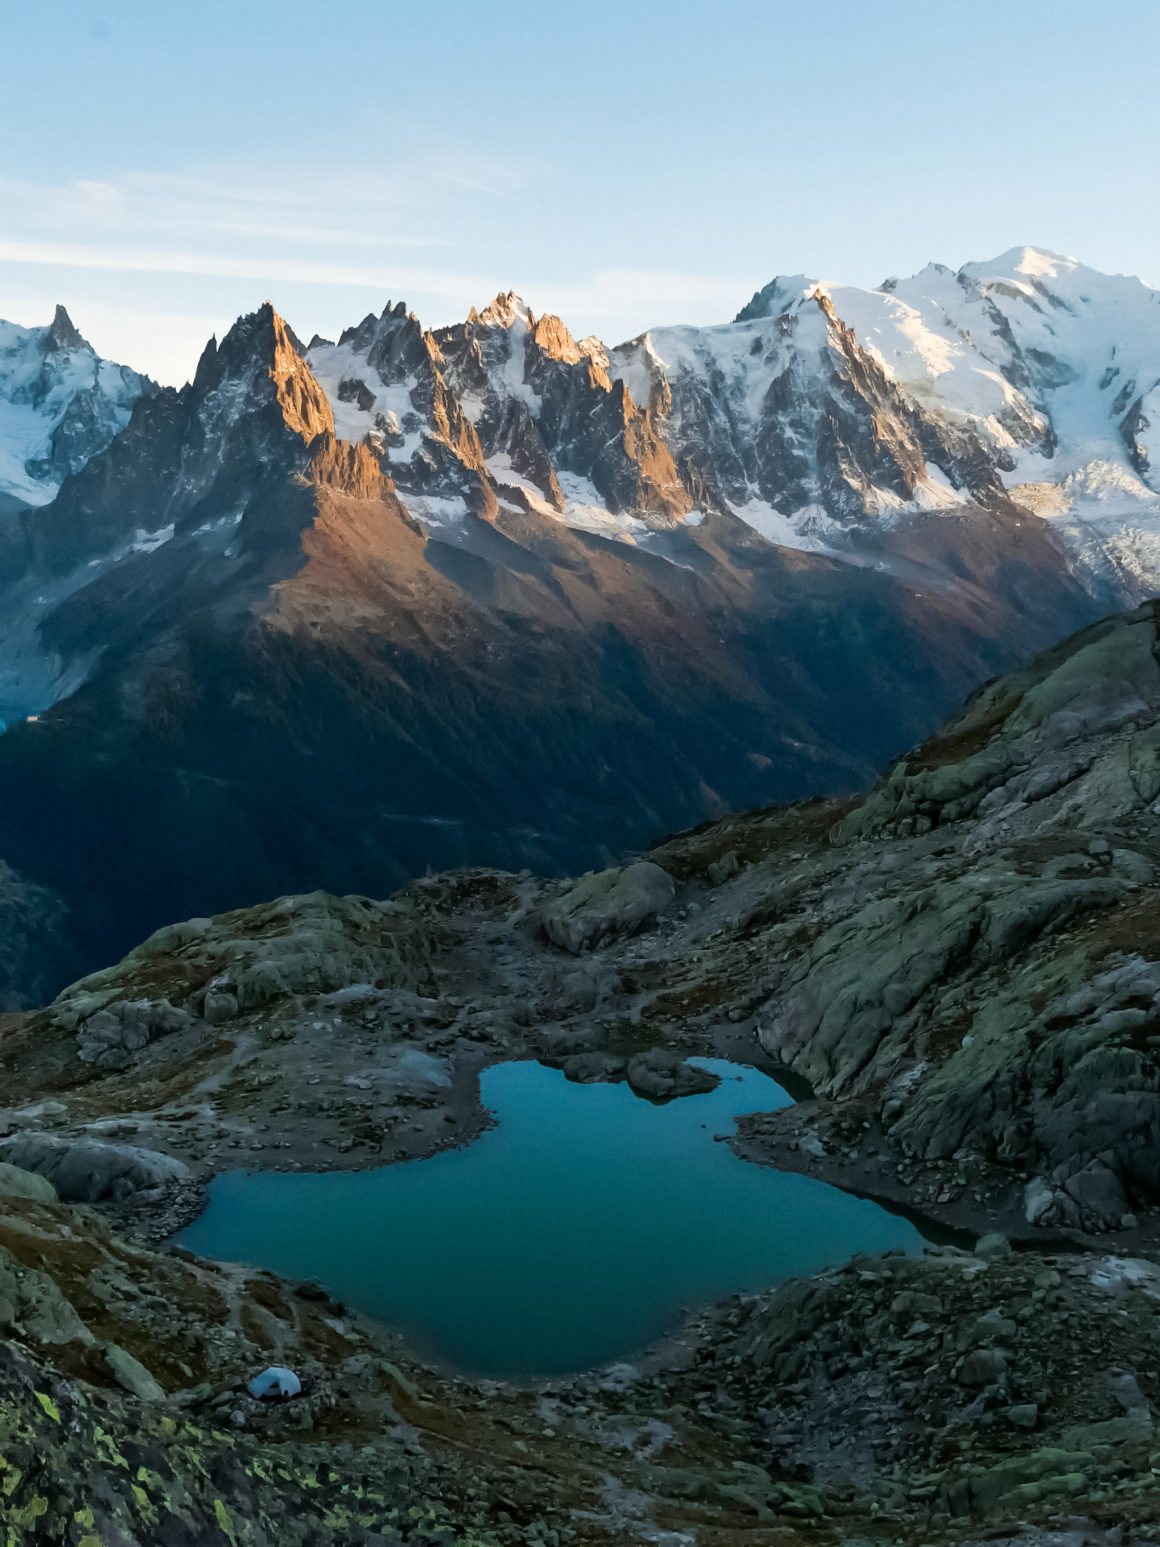 Lac Blanc, Aiguilles Rouges massif, Chamonix valley, France © Claire Blumenfeld